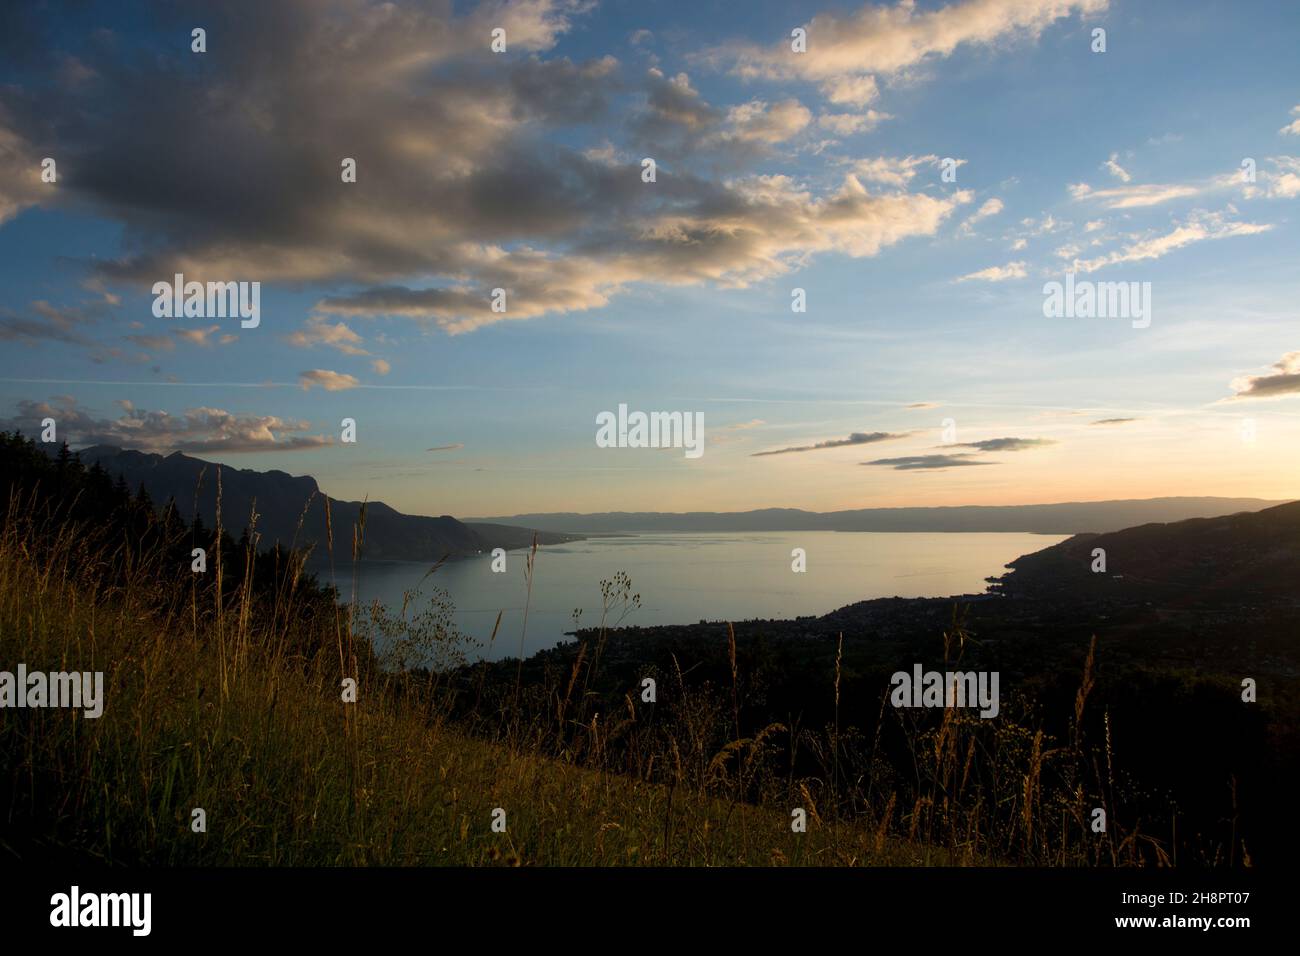 Spektakulärer Sonnenuntergang über dem Genfersee in der Schweiz Stock Photo